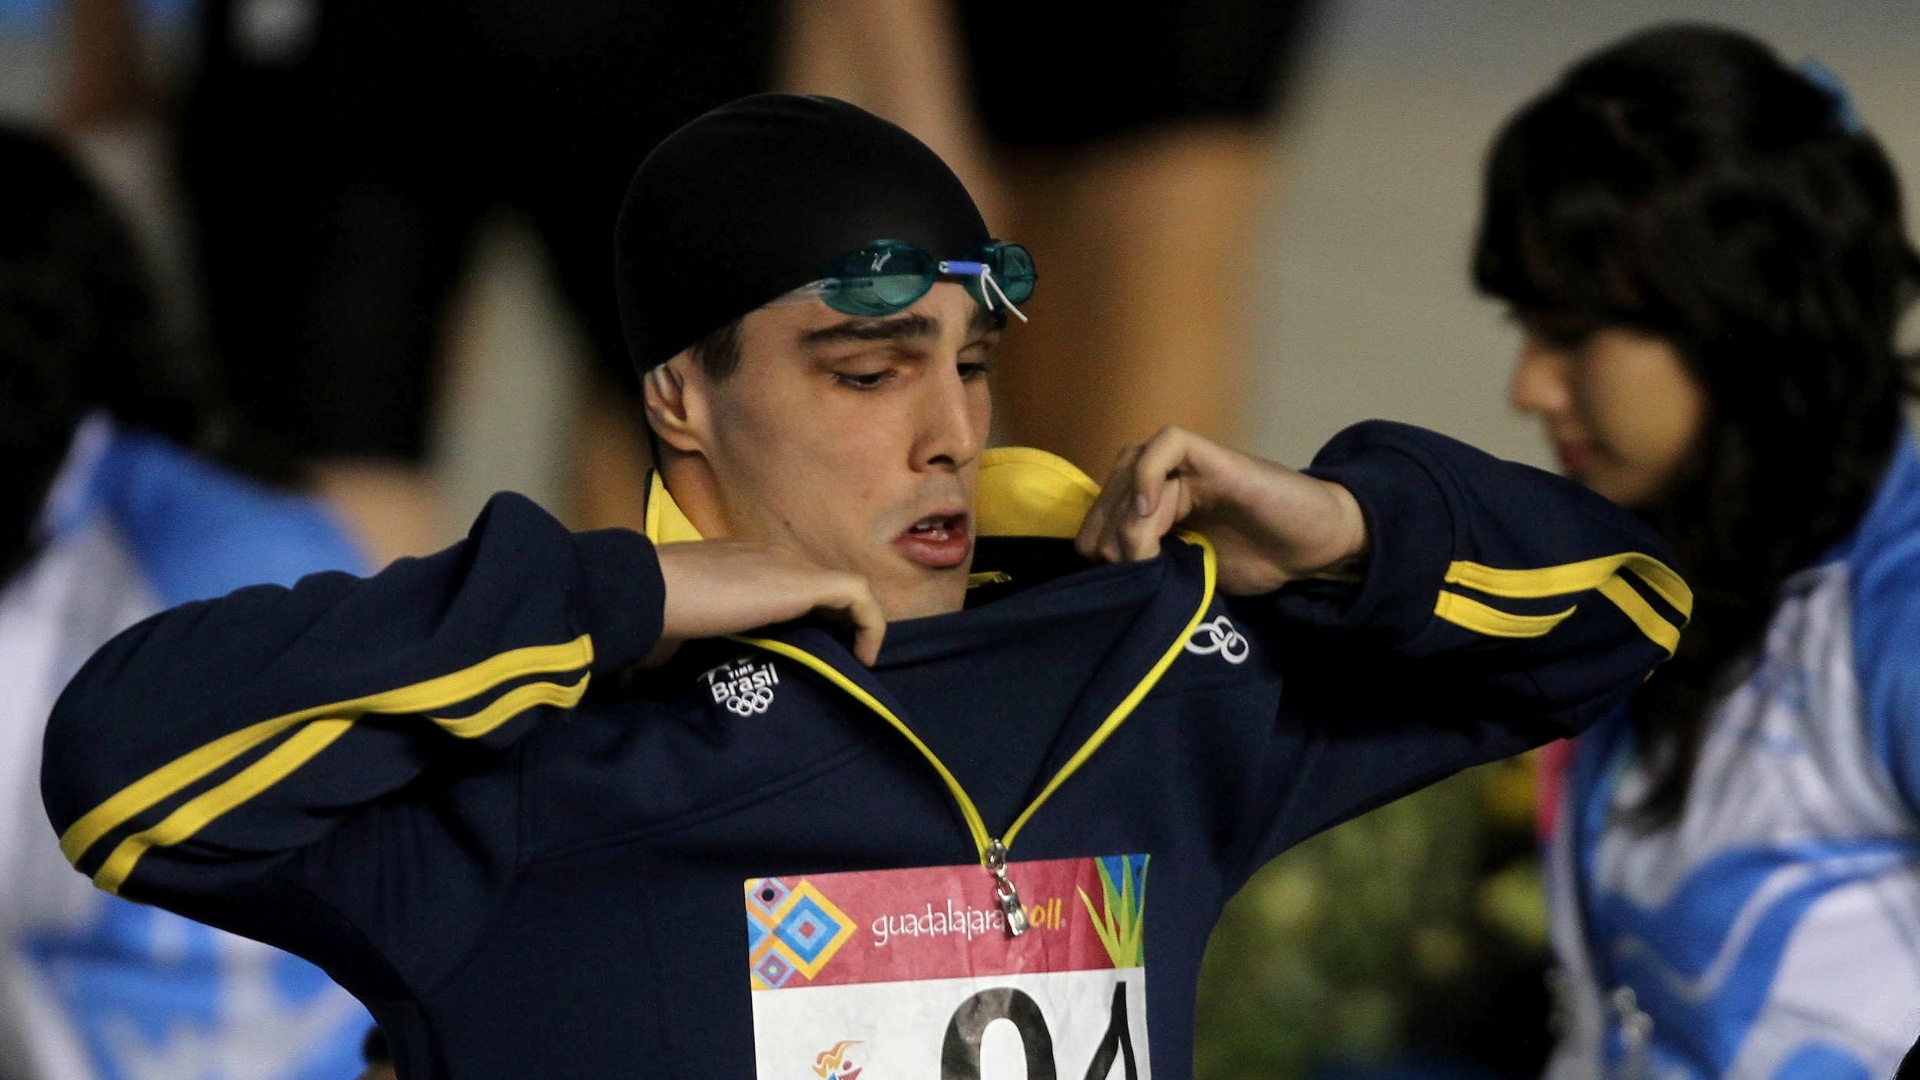 Bruno Fratus não conseguiu confirmar o seu favoritismo e ficou fora da final dos 100 m em Guadalajara (16/10/2011)